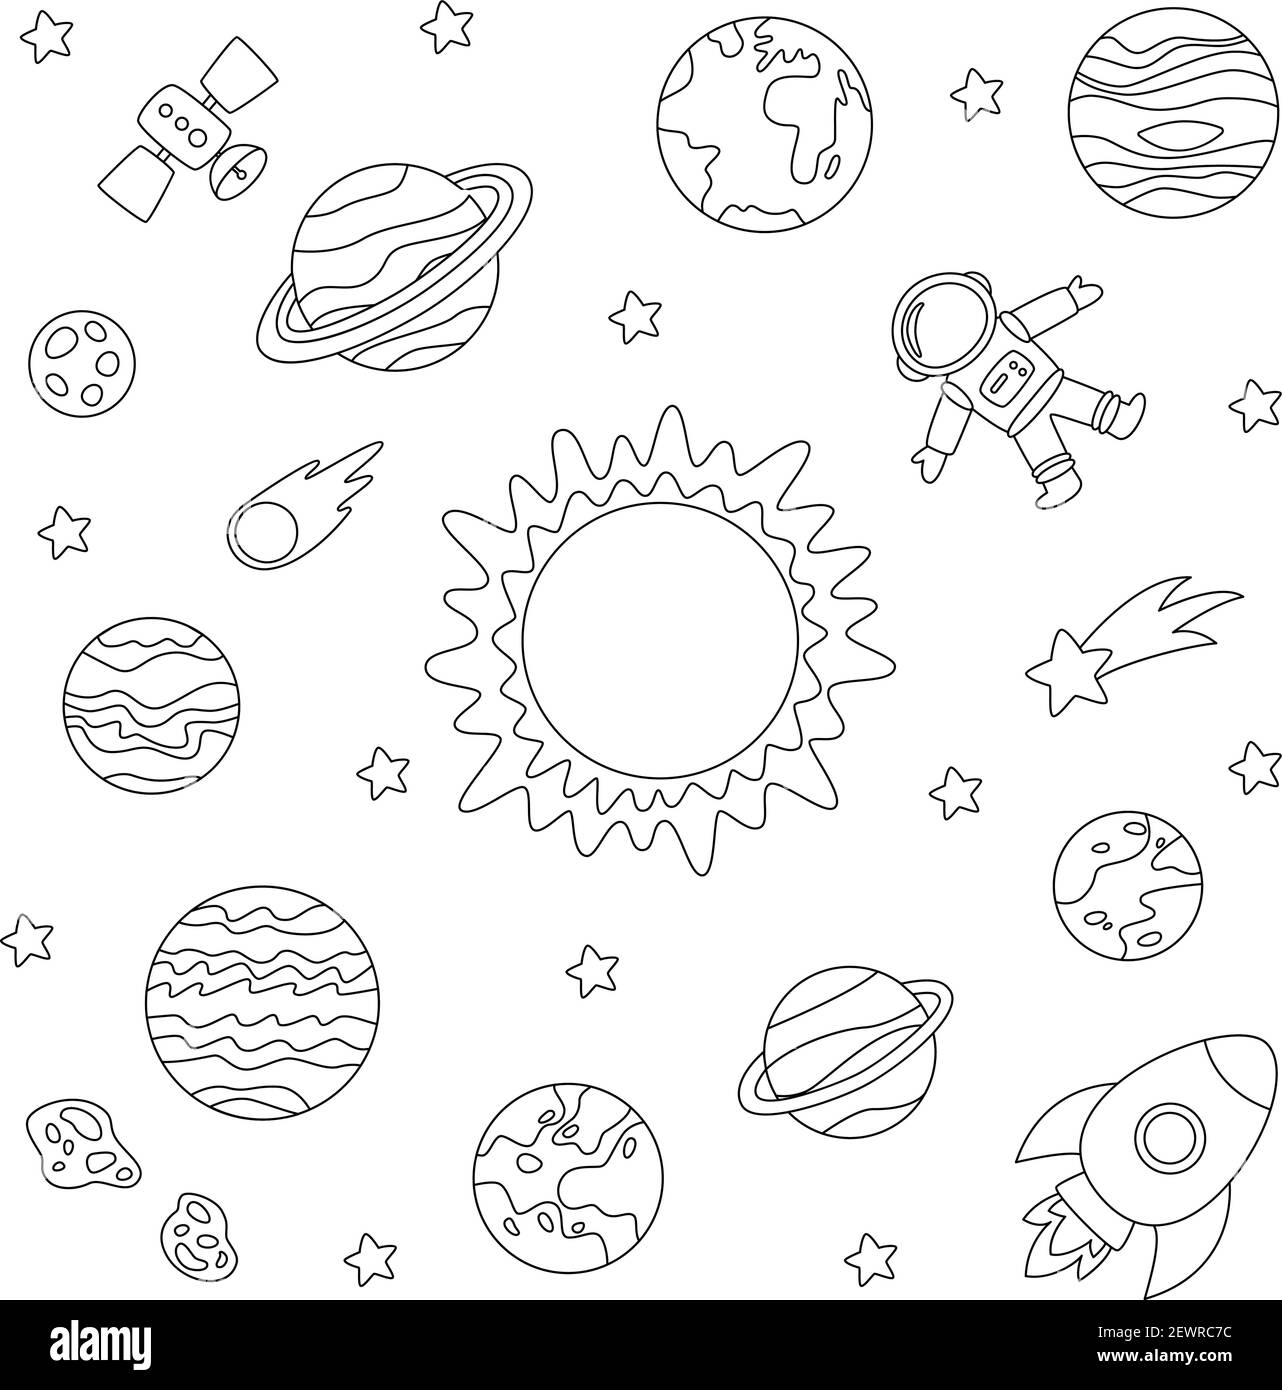 Page de coloriage avec planètes du système solaire. Image en noir et blanc. Illustration de Vecteur